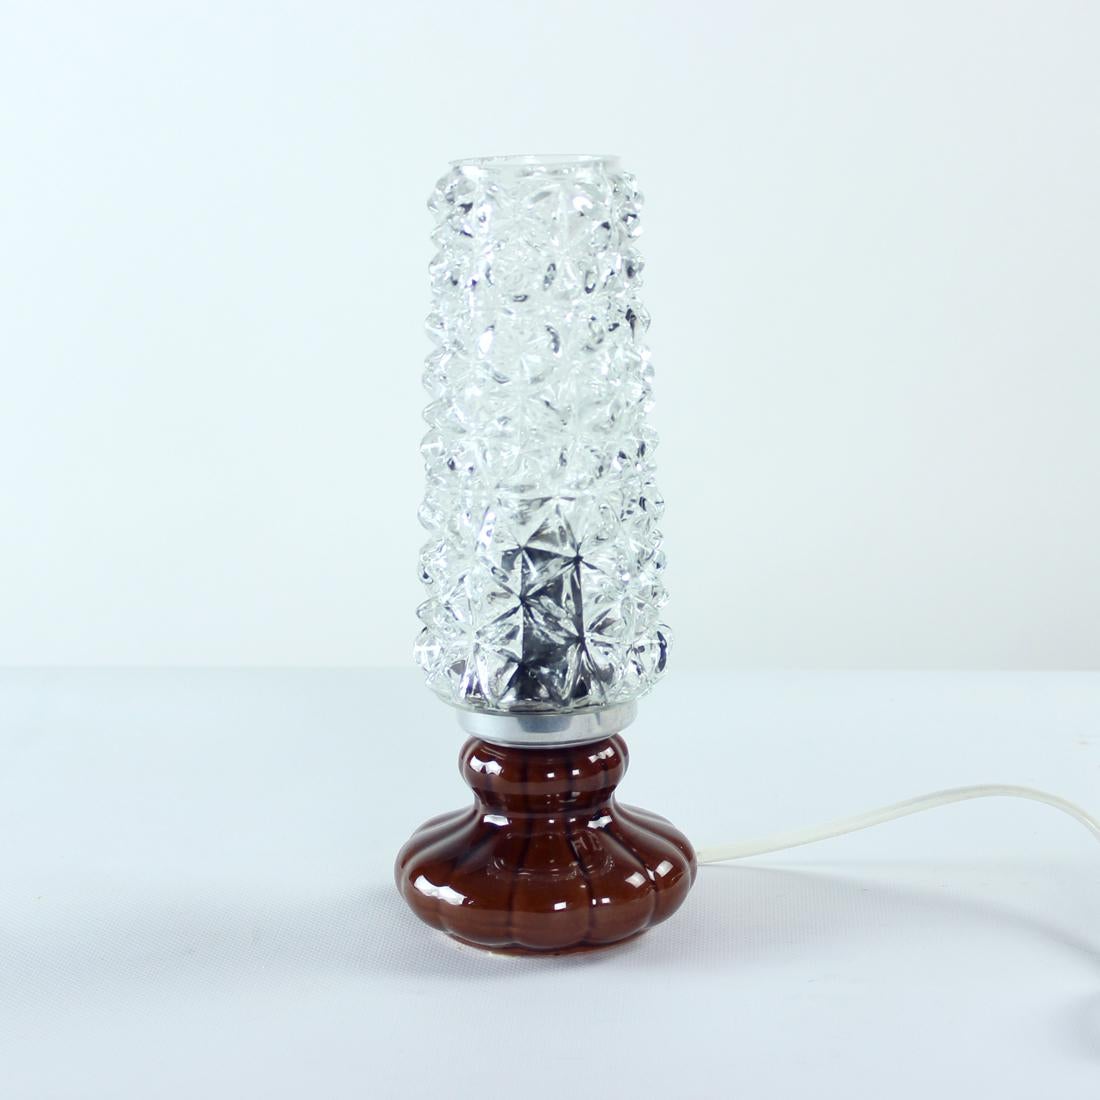 Belle lampe de table produite en Tchécoslovaquie dans les années 1960. Réalisé dans deux matériaux étonnants - base en céramique et abat-jour en verre. La base est faite en céramique émaillée brune, ne présente aucune usure, excellent état.